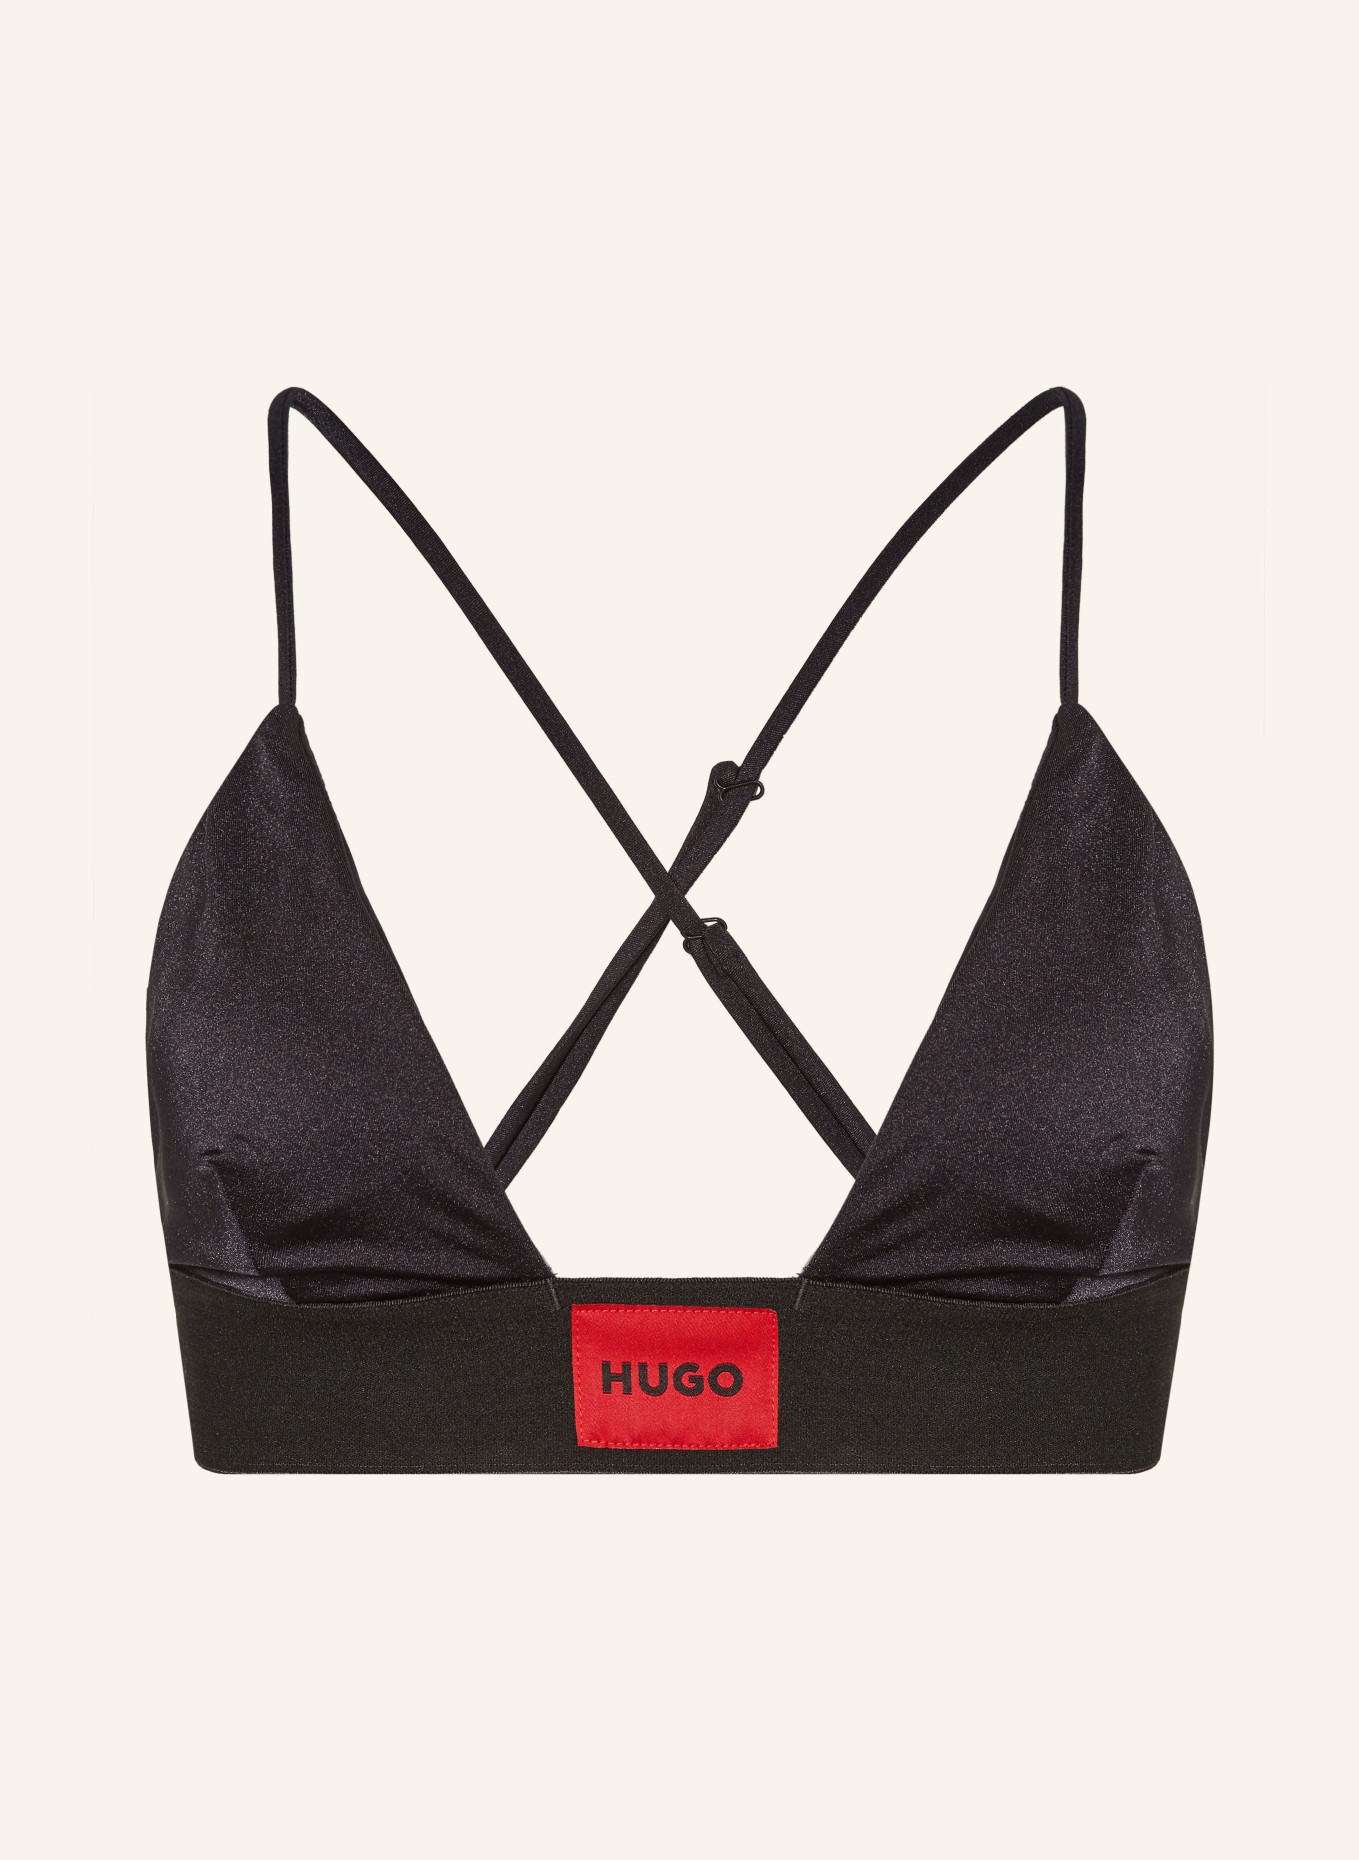 HUGO Bralette-Bikini-Top HANA, Farbe: SCHWARZ (Bild 1)